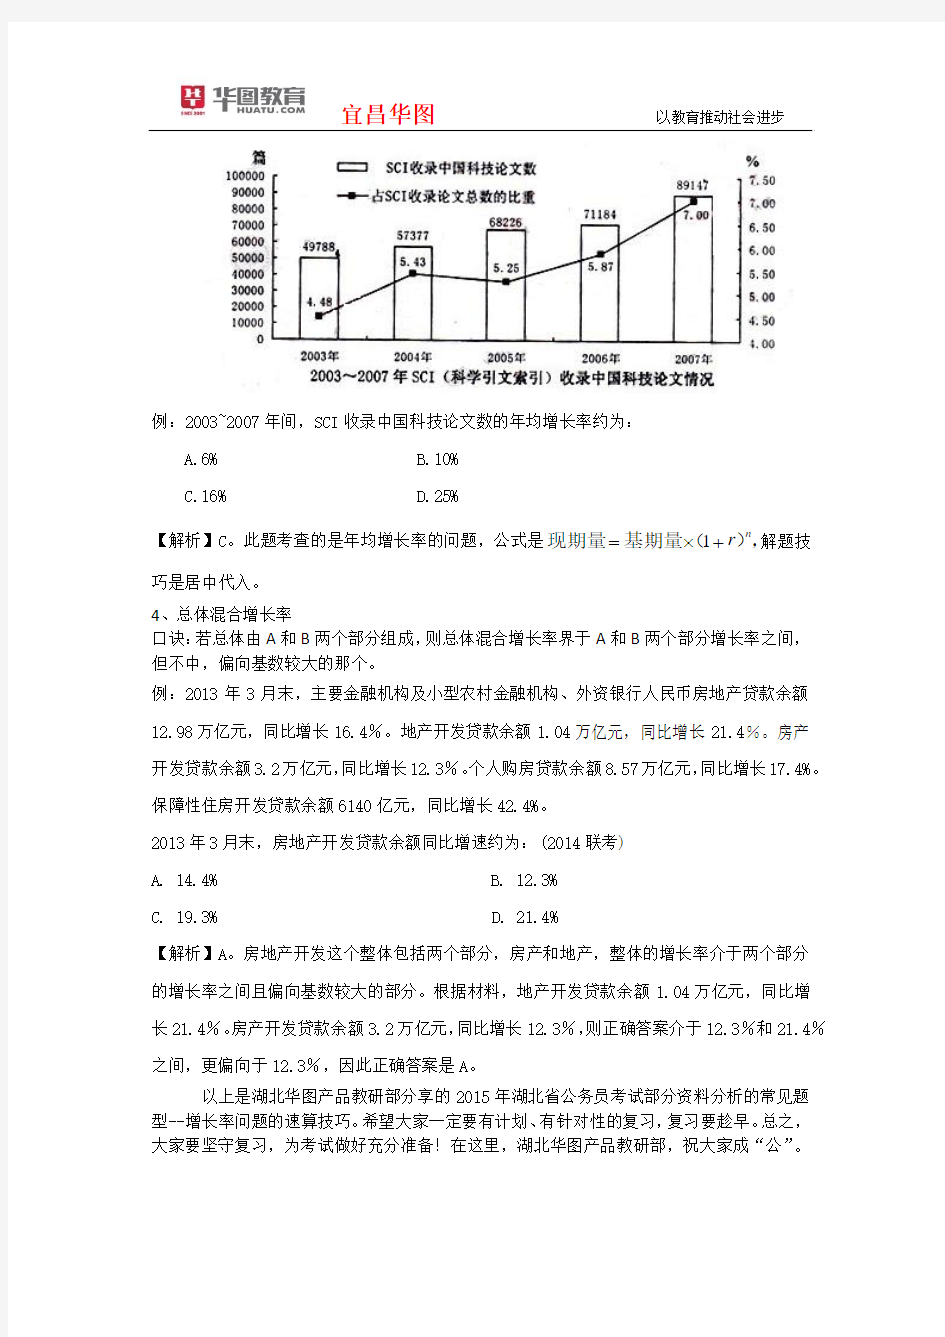 《2015年湖北省公务员考试资料分析之增长率相关问题》